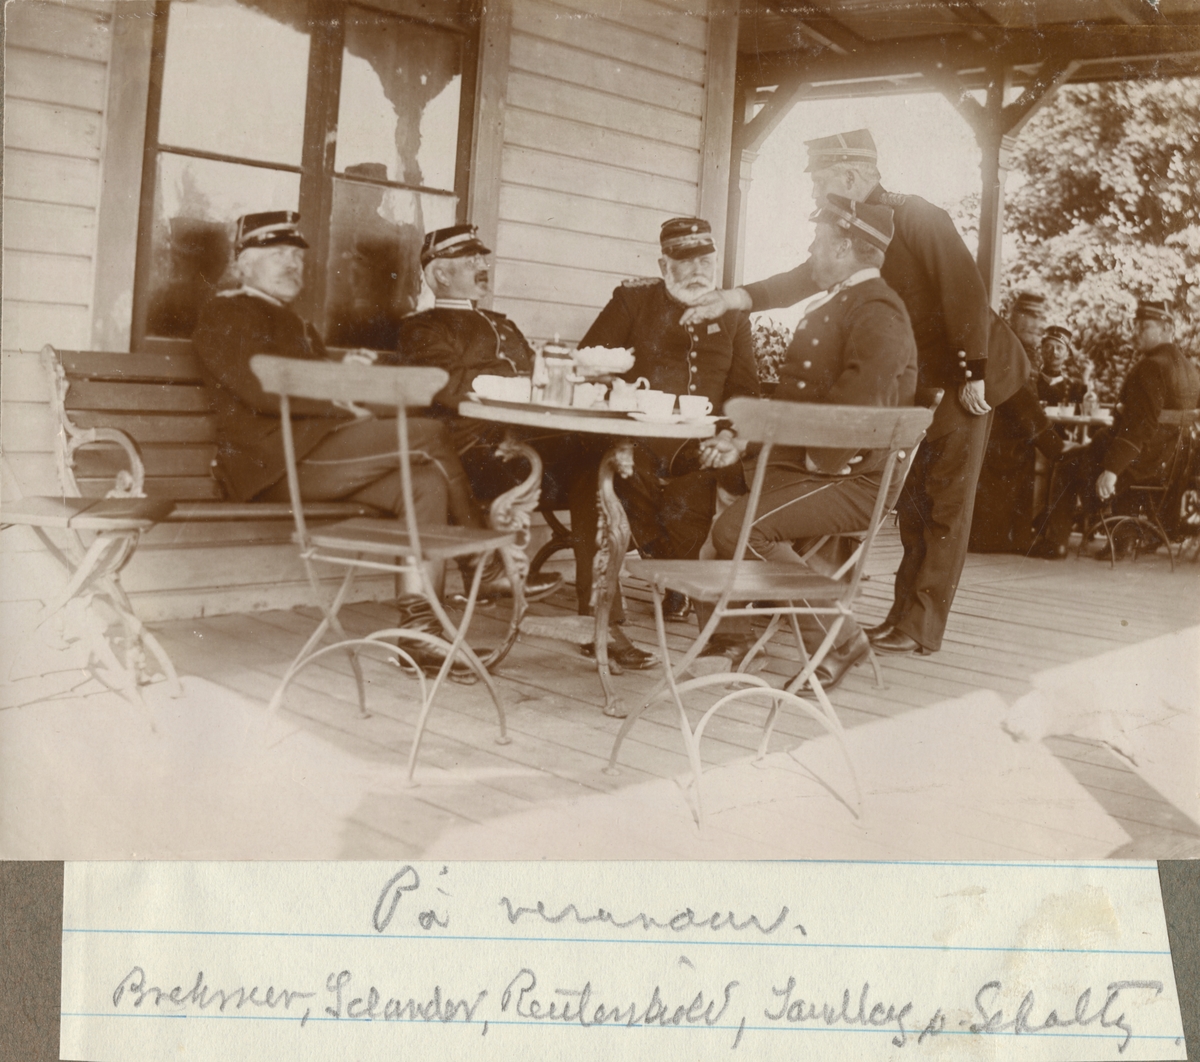 Fem officerare från Hälsinge regemente samlade kring kaffebord på verandan. Från vänster major Brehmer, major Selander, överstelöjtnant Reuterskiöld, bataljonsläkare Sandberg och kapten von Schoultz.